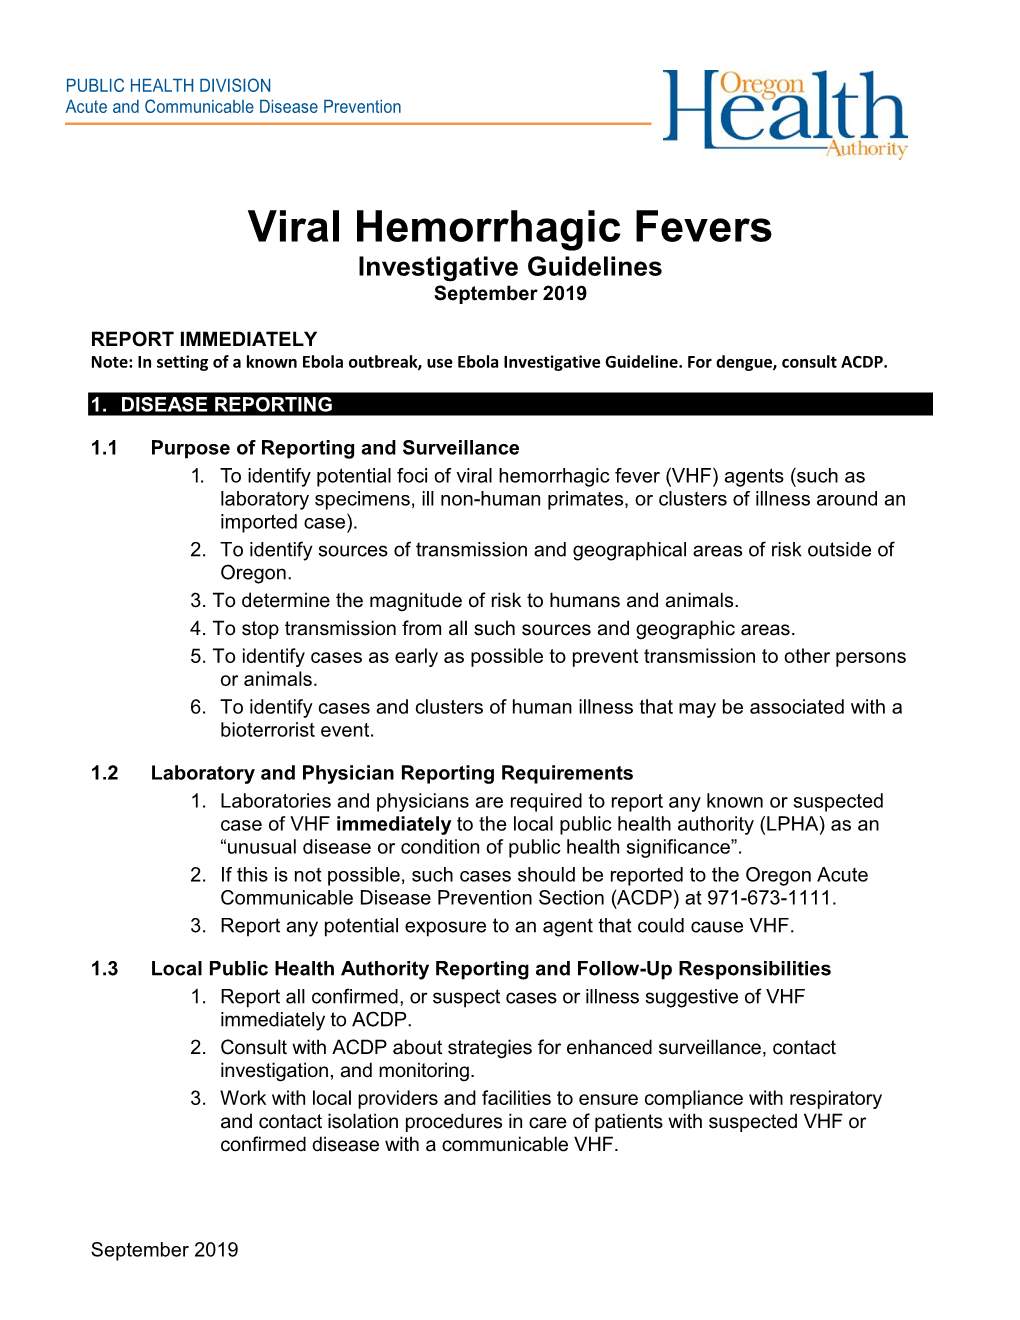 Viral Hemorrhagic Fevers Investigative Guidelines September 2019